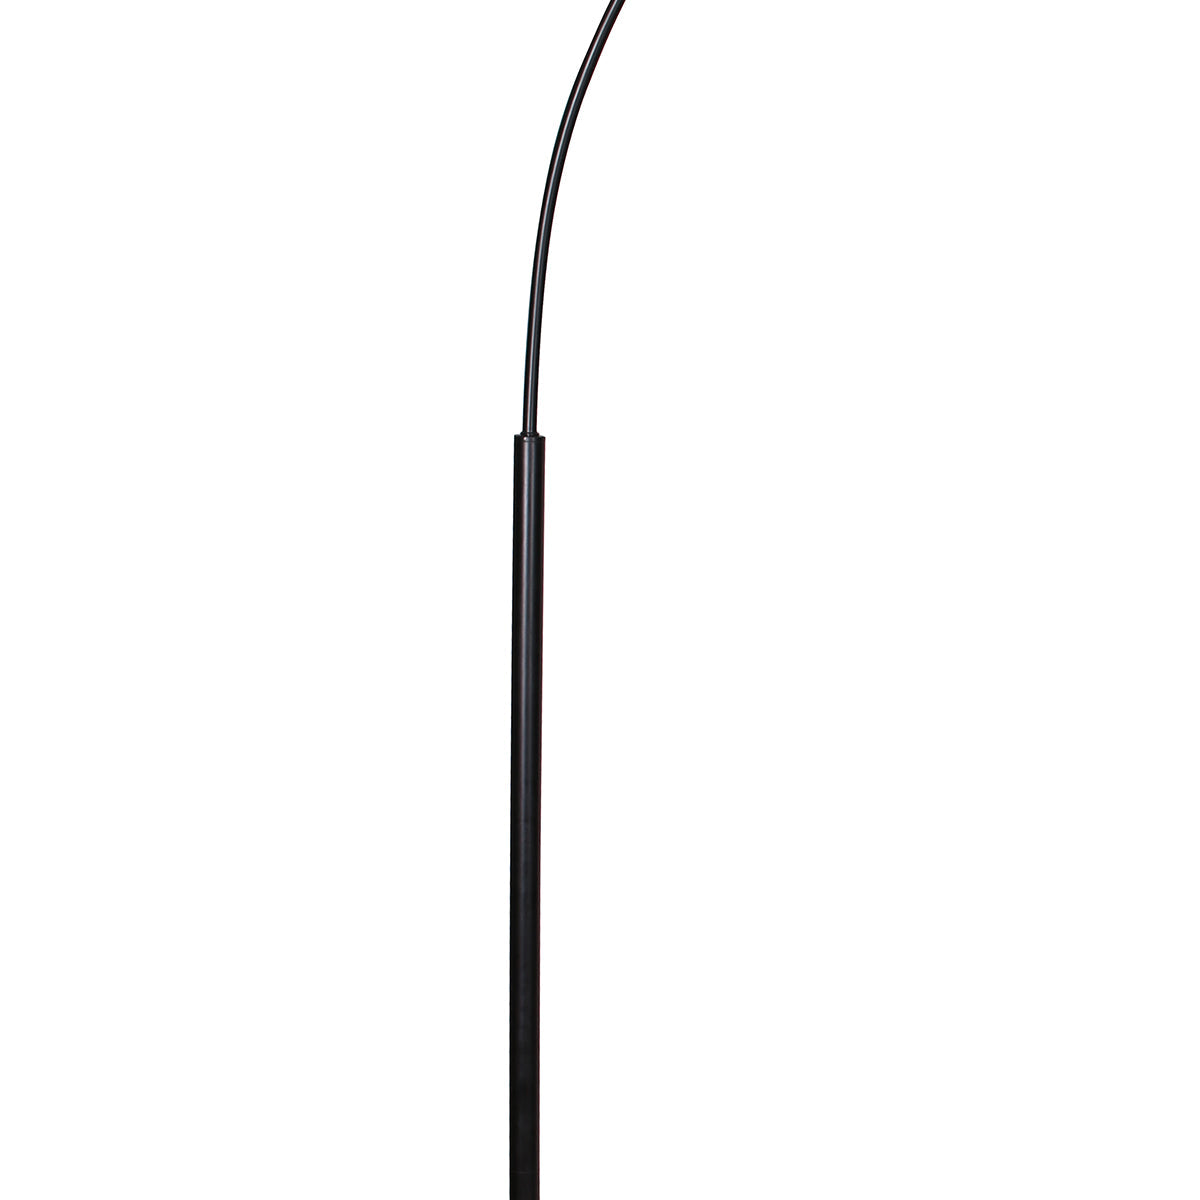 Essex 75.5" Arc Floor Lamp